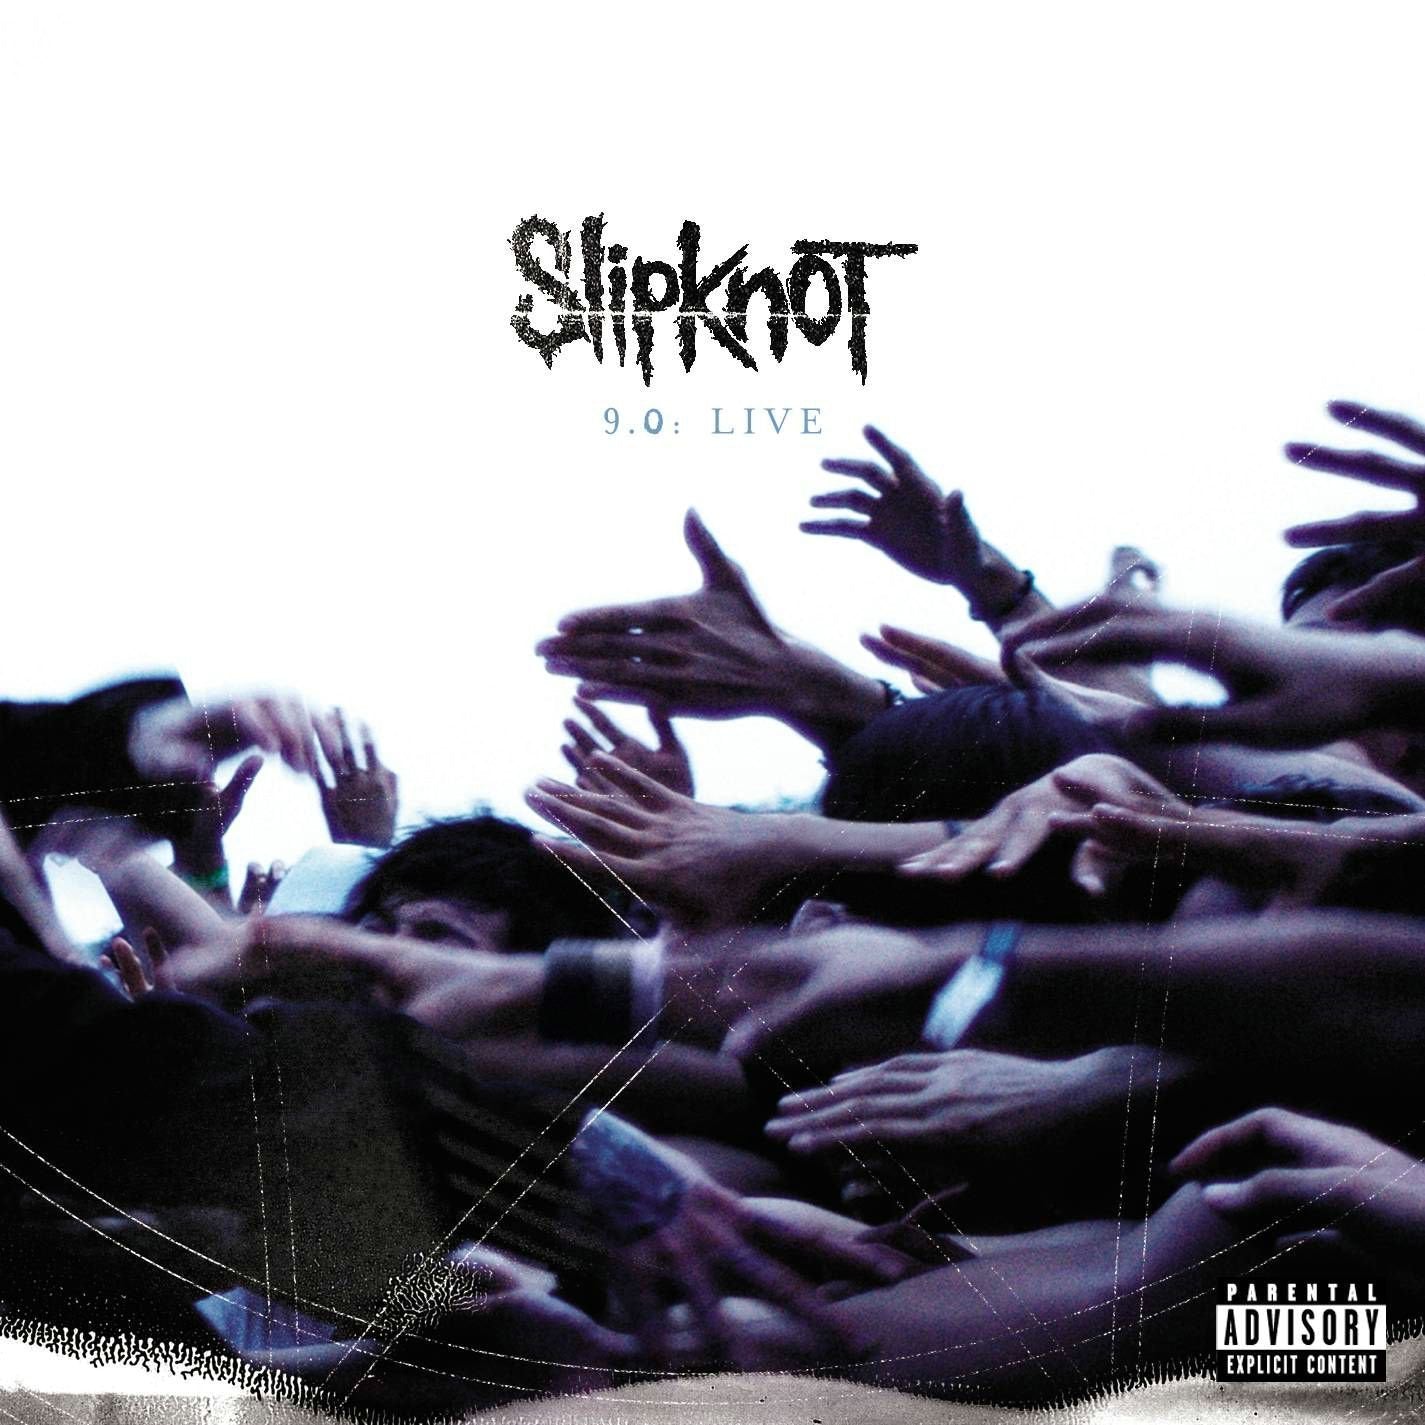 Slipknot "9.0: Live" CD